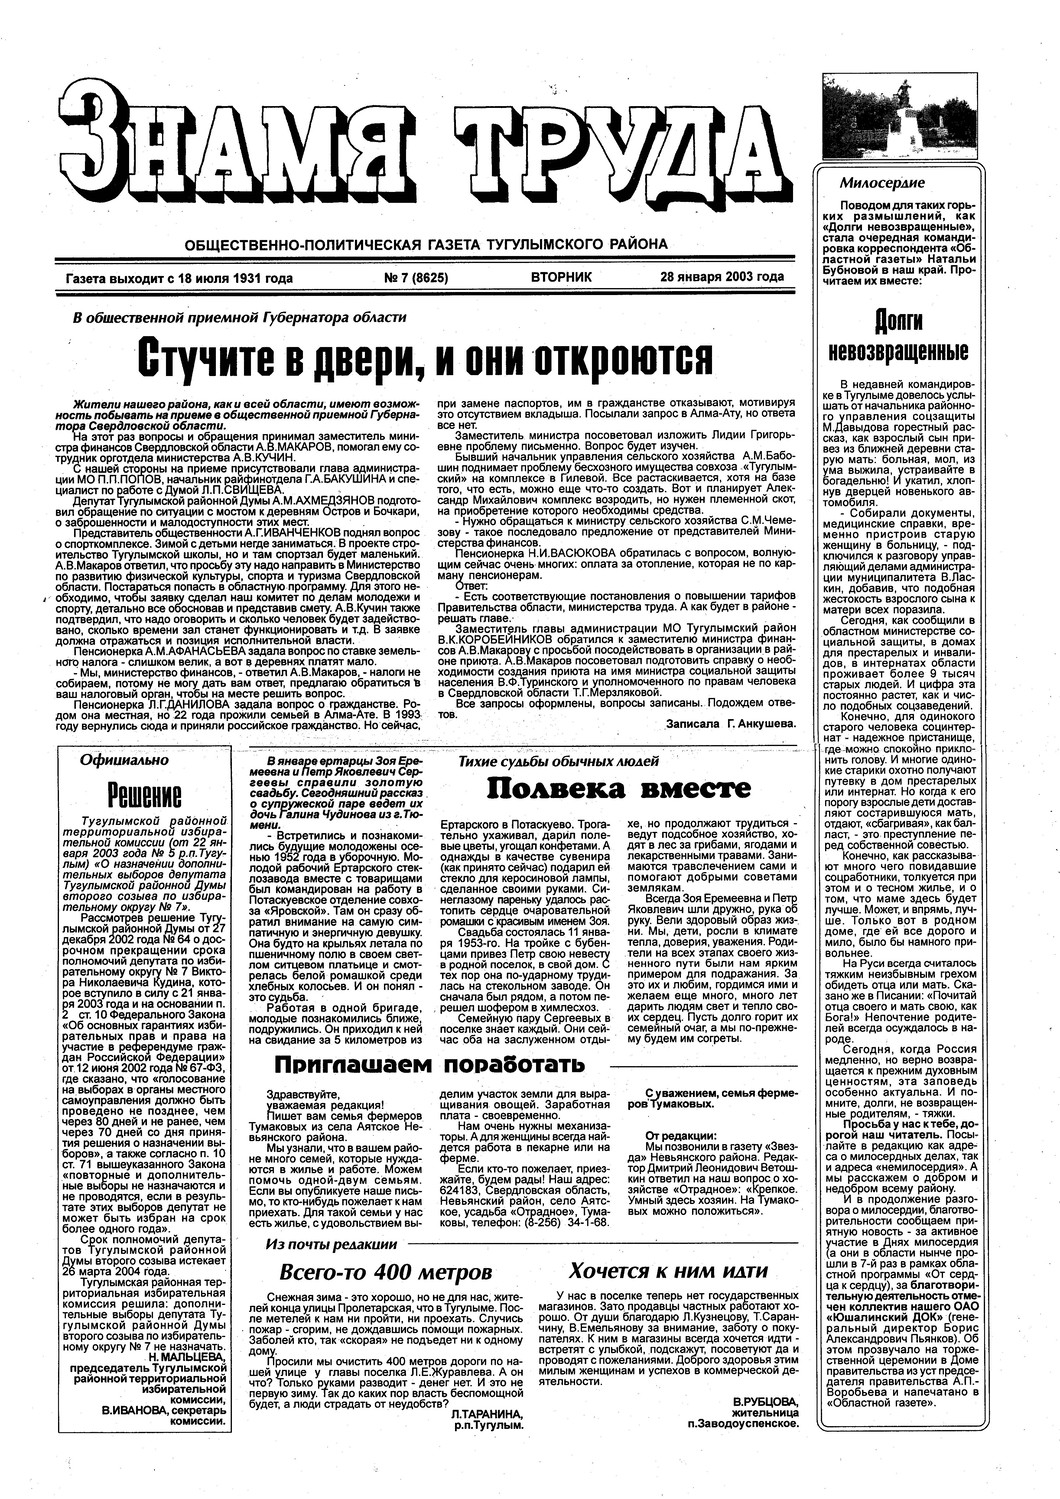 Знамя труда №7 от 28 января 2003г.